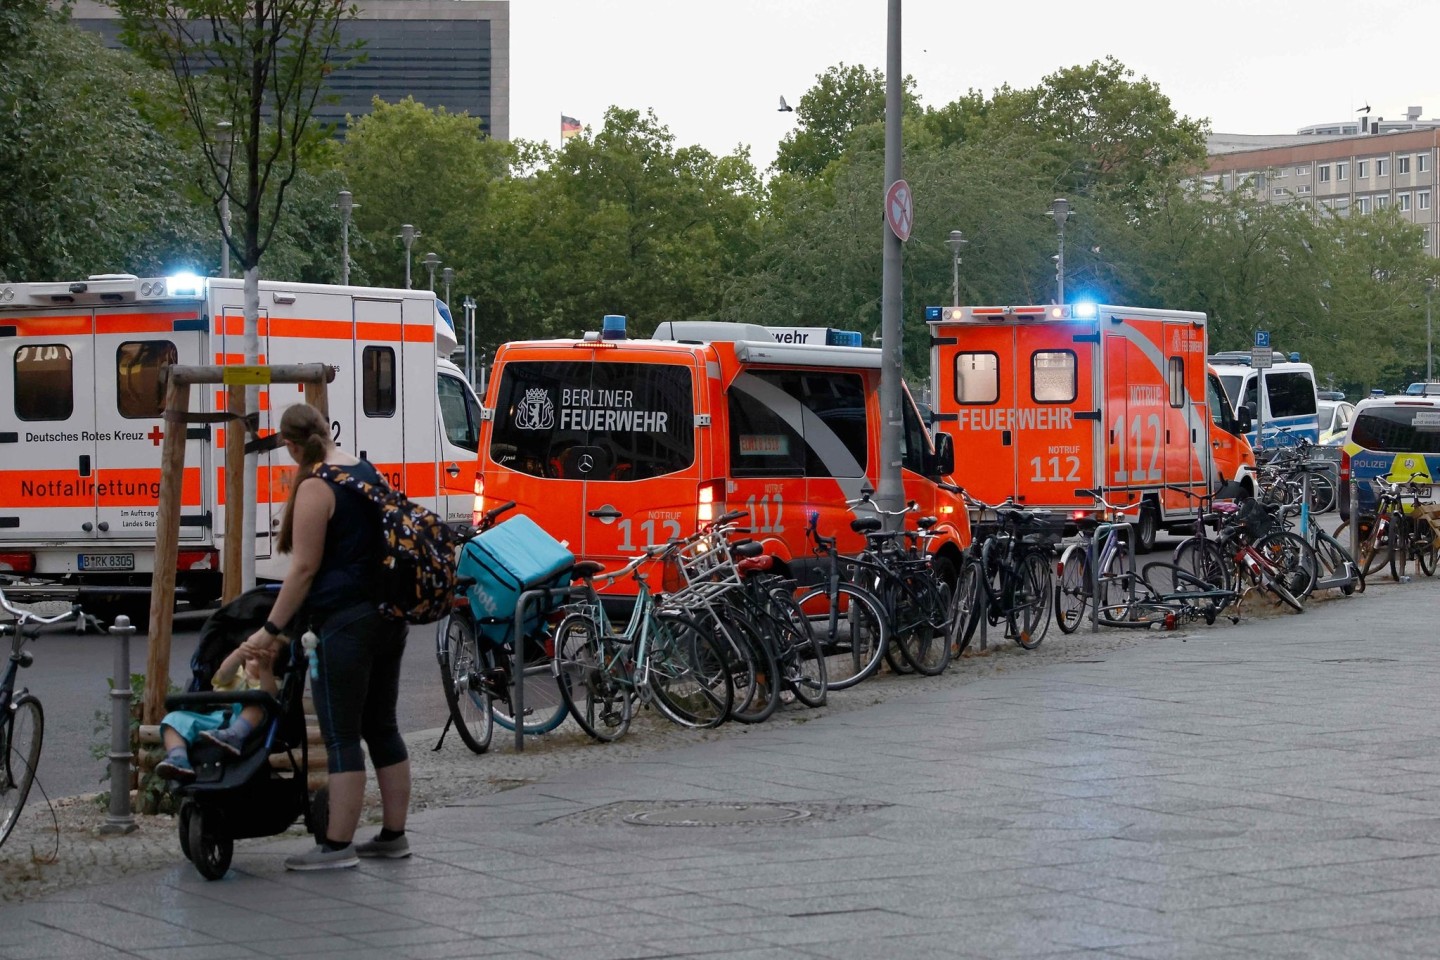 Einsatzfahrzeuge von Polizei und Feuerwehr vor dem Bahnhof Friedrichstrasse.